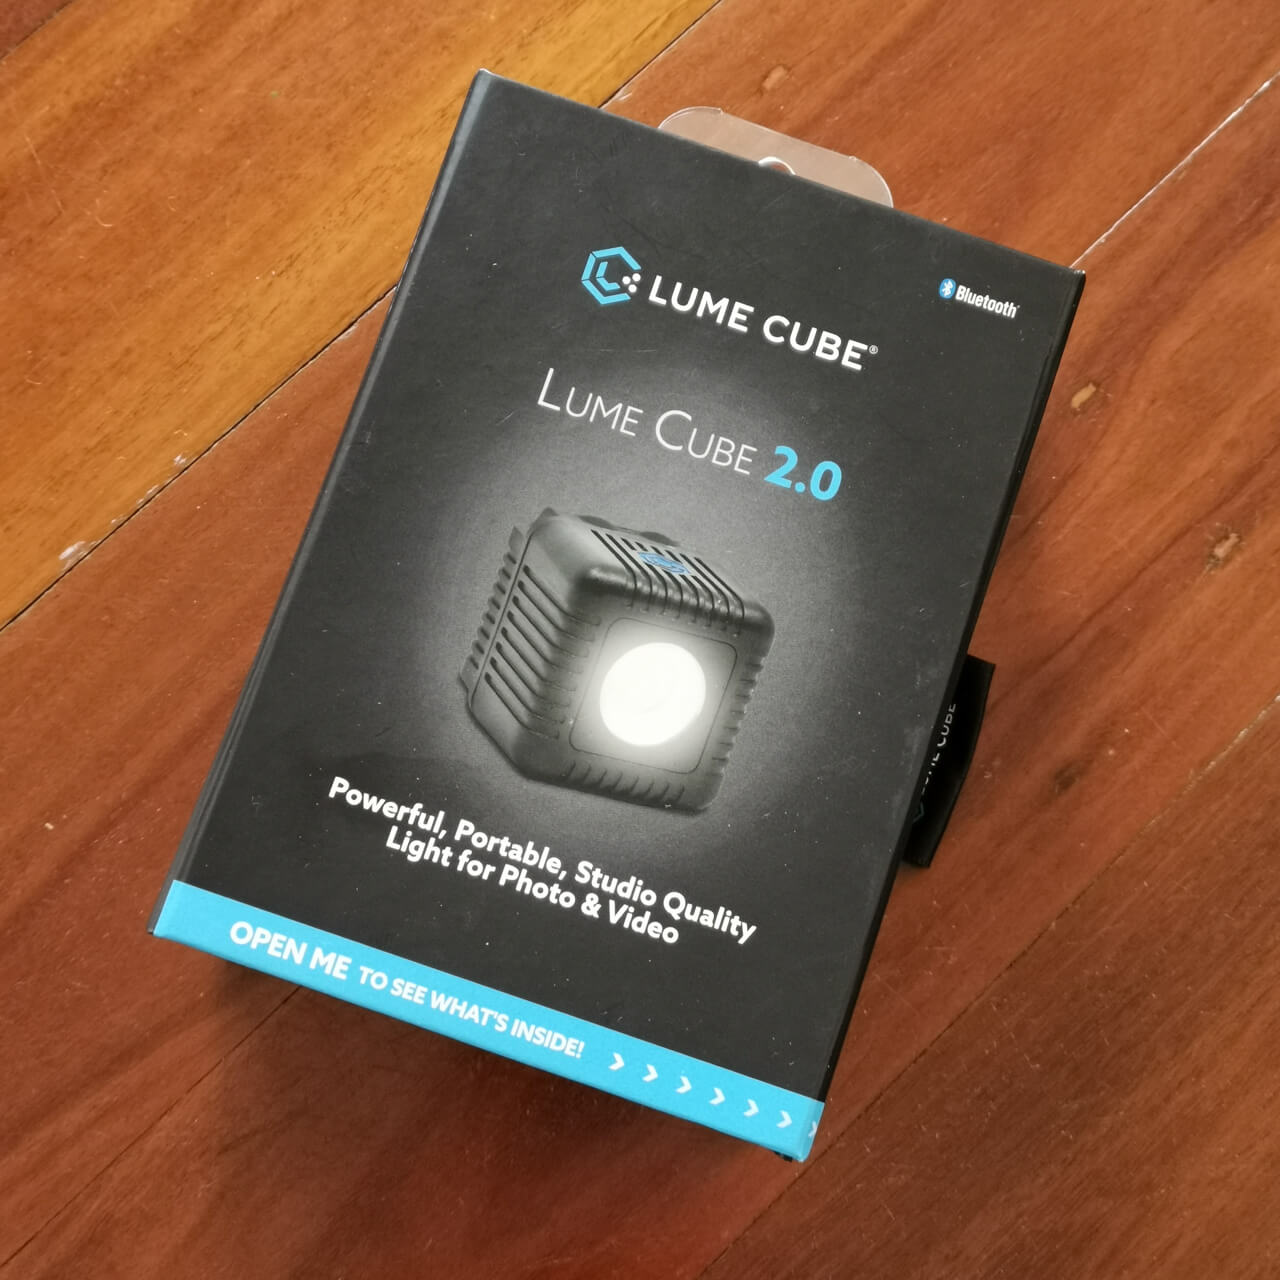 LumeCube 2.0 packaging